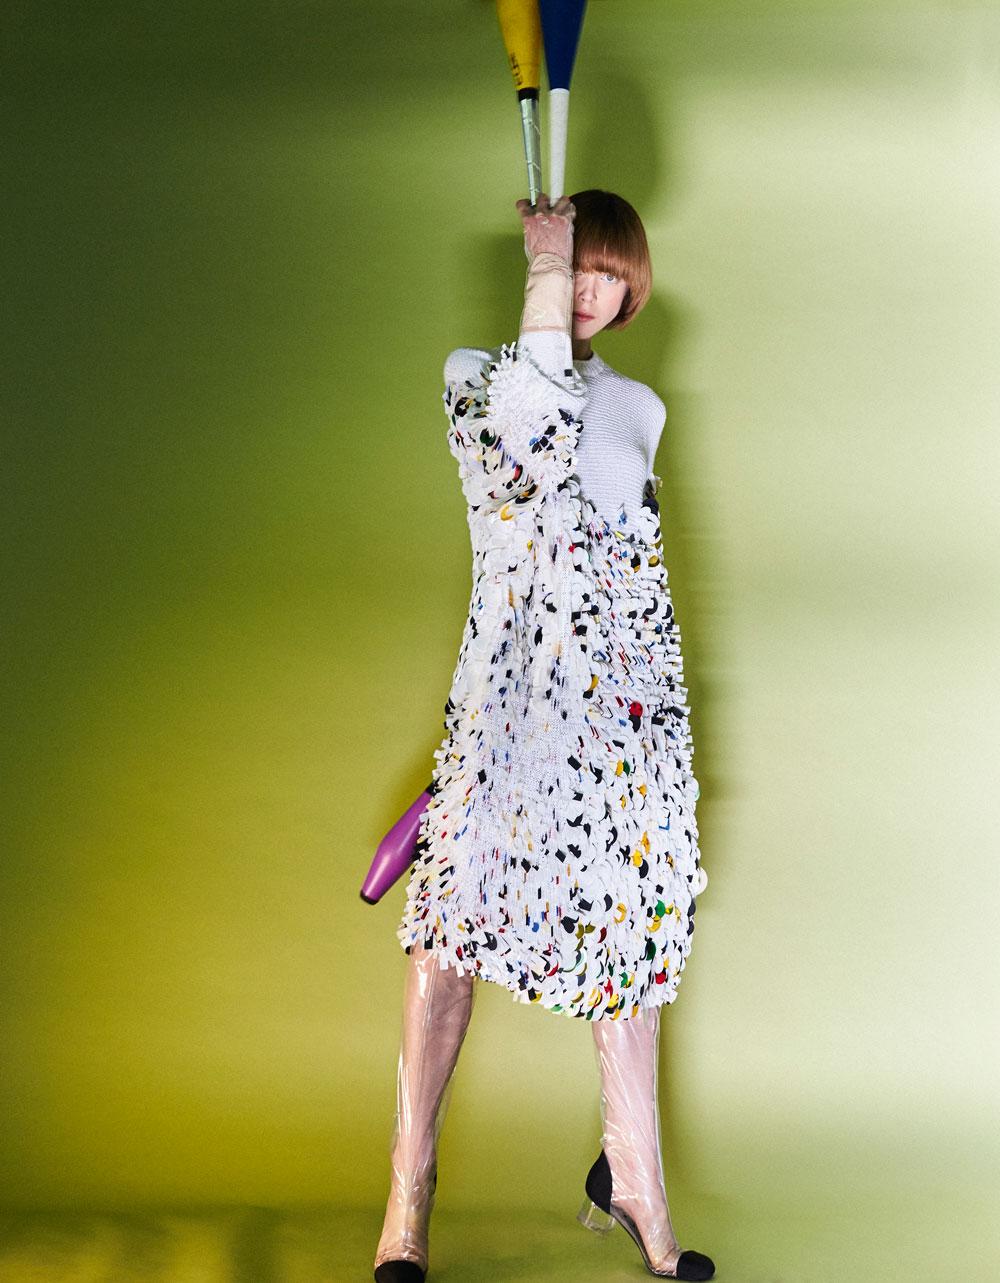 Witte gebreide jurk van katoen met pailletten, Krizia. Transparante plastic lieslaarzen met bijbehorende handschoenen, Chanel.